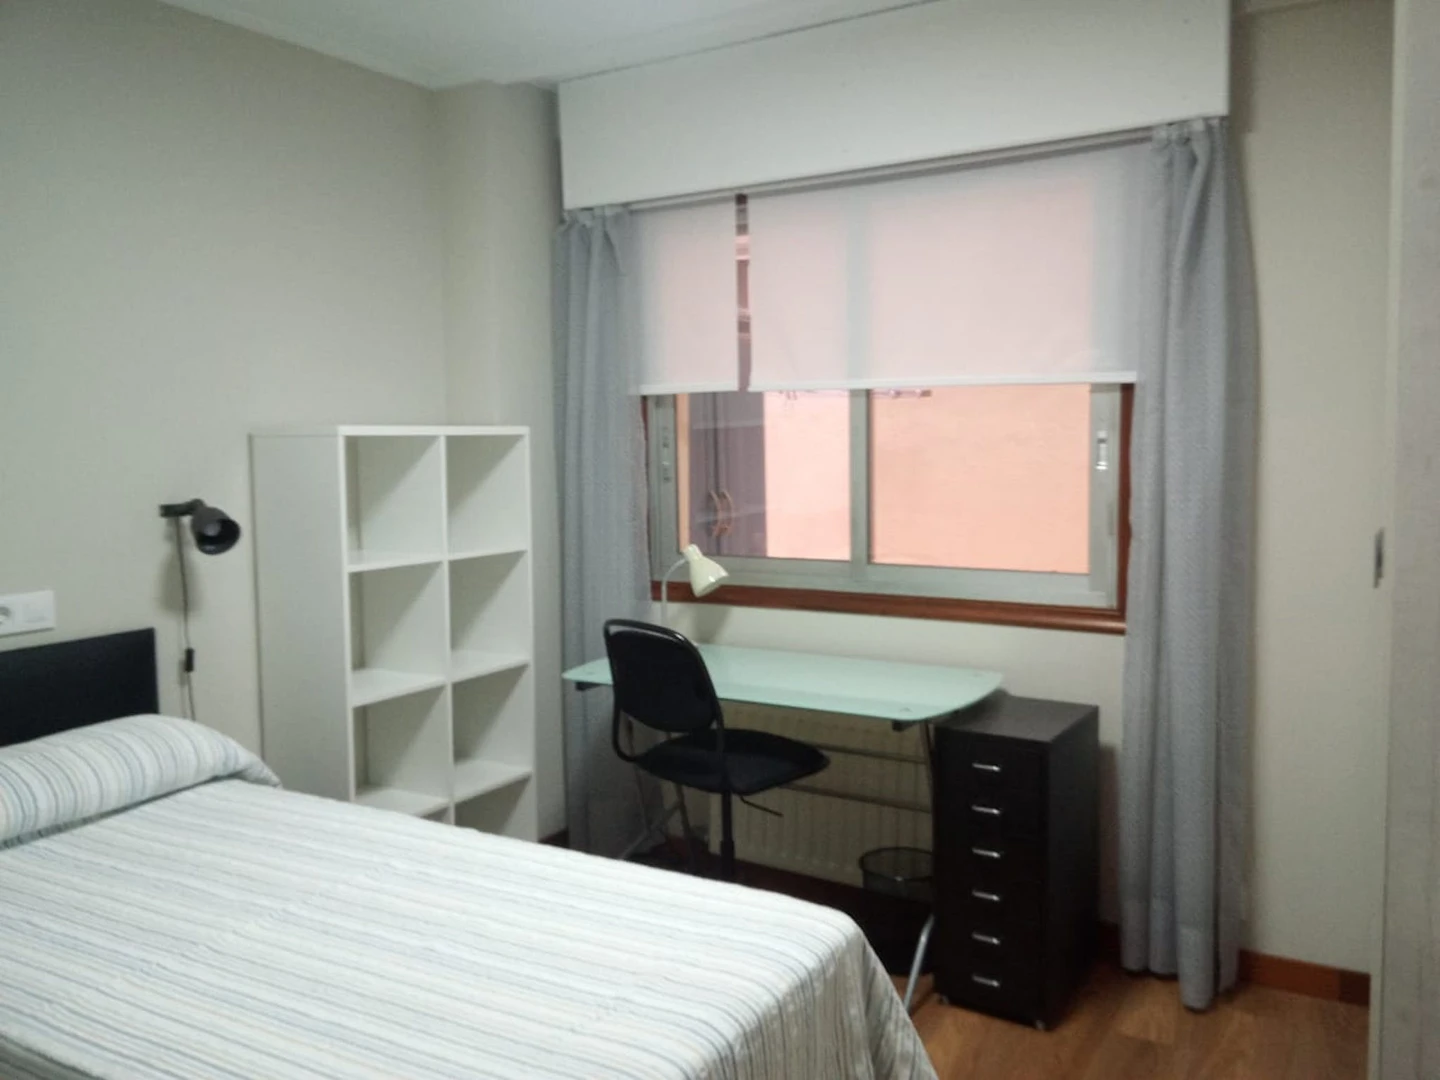 Cheap private room in Vigo